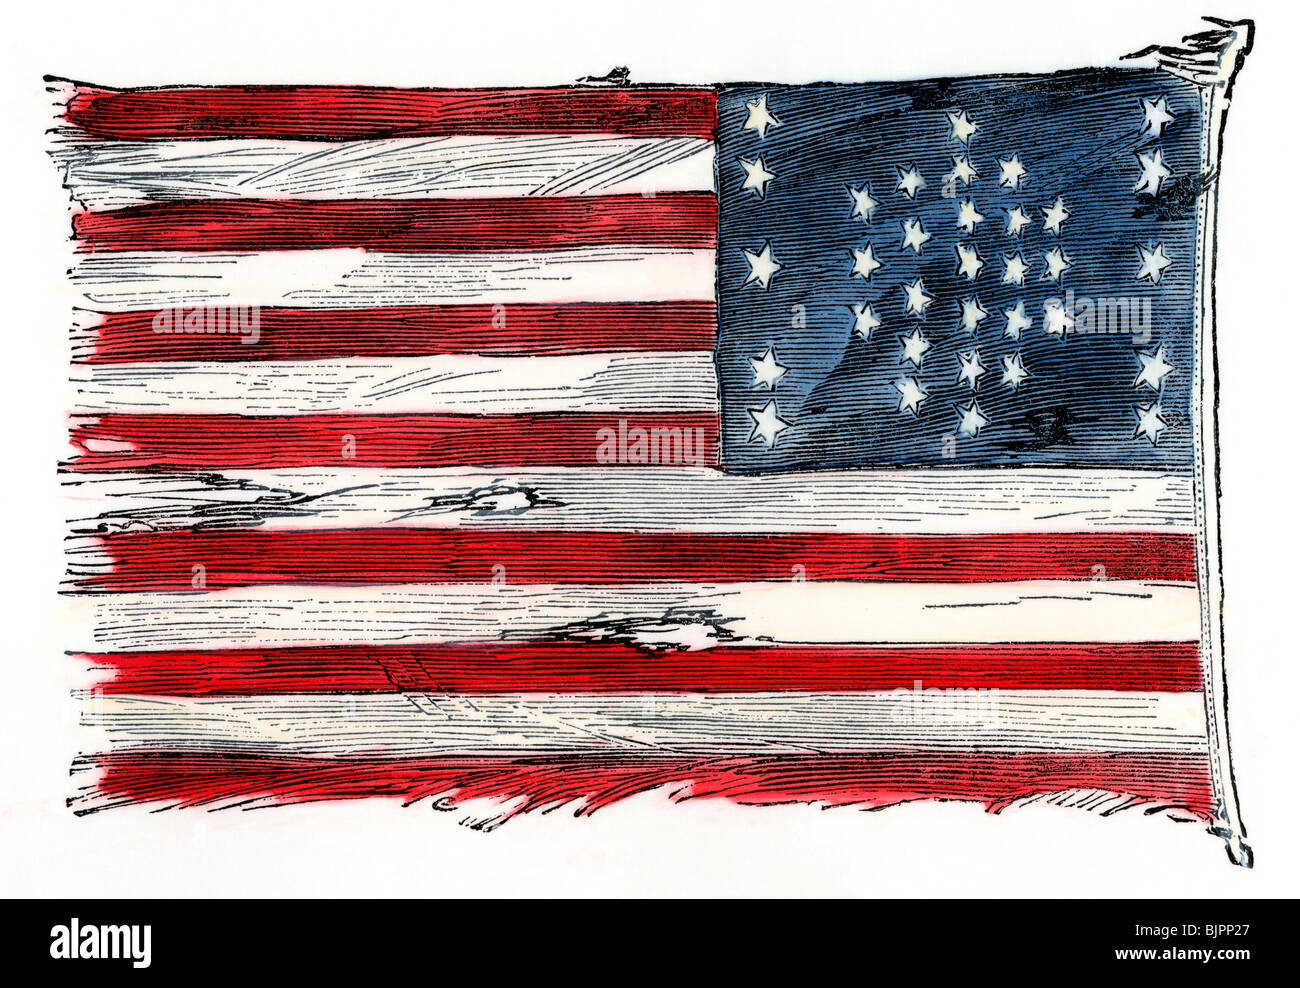 Fort Sumter der US-Flagge nach der Bombardierung, wie in New York im Jahre 1861 von Major Anderson, Sumter Commander angehoben. Hand - farbige Holzschnitt Stockfoto